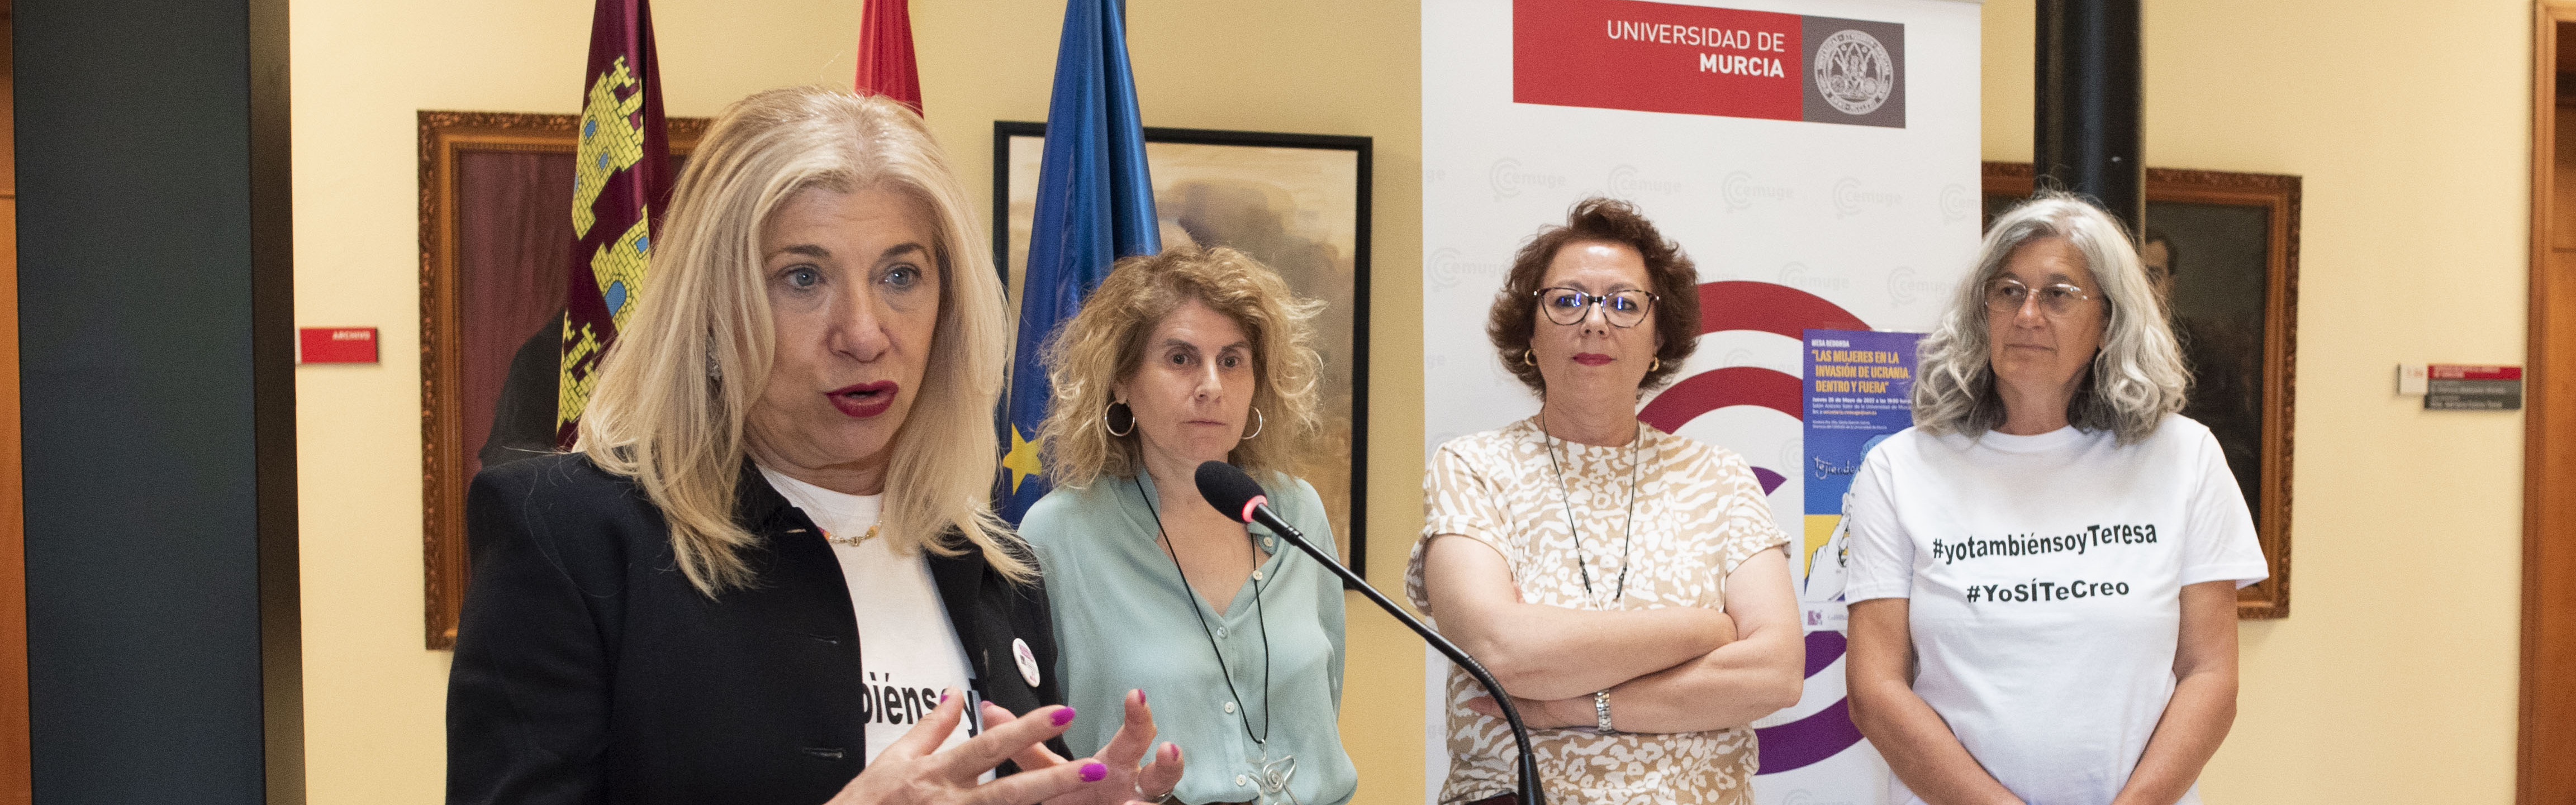 Nota de prensa - Arranca esta tarde el foro ‘Tejiendo redes feministas’ con una conferencia sobre las mujeres de Ucrania